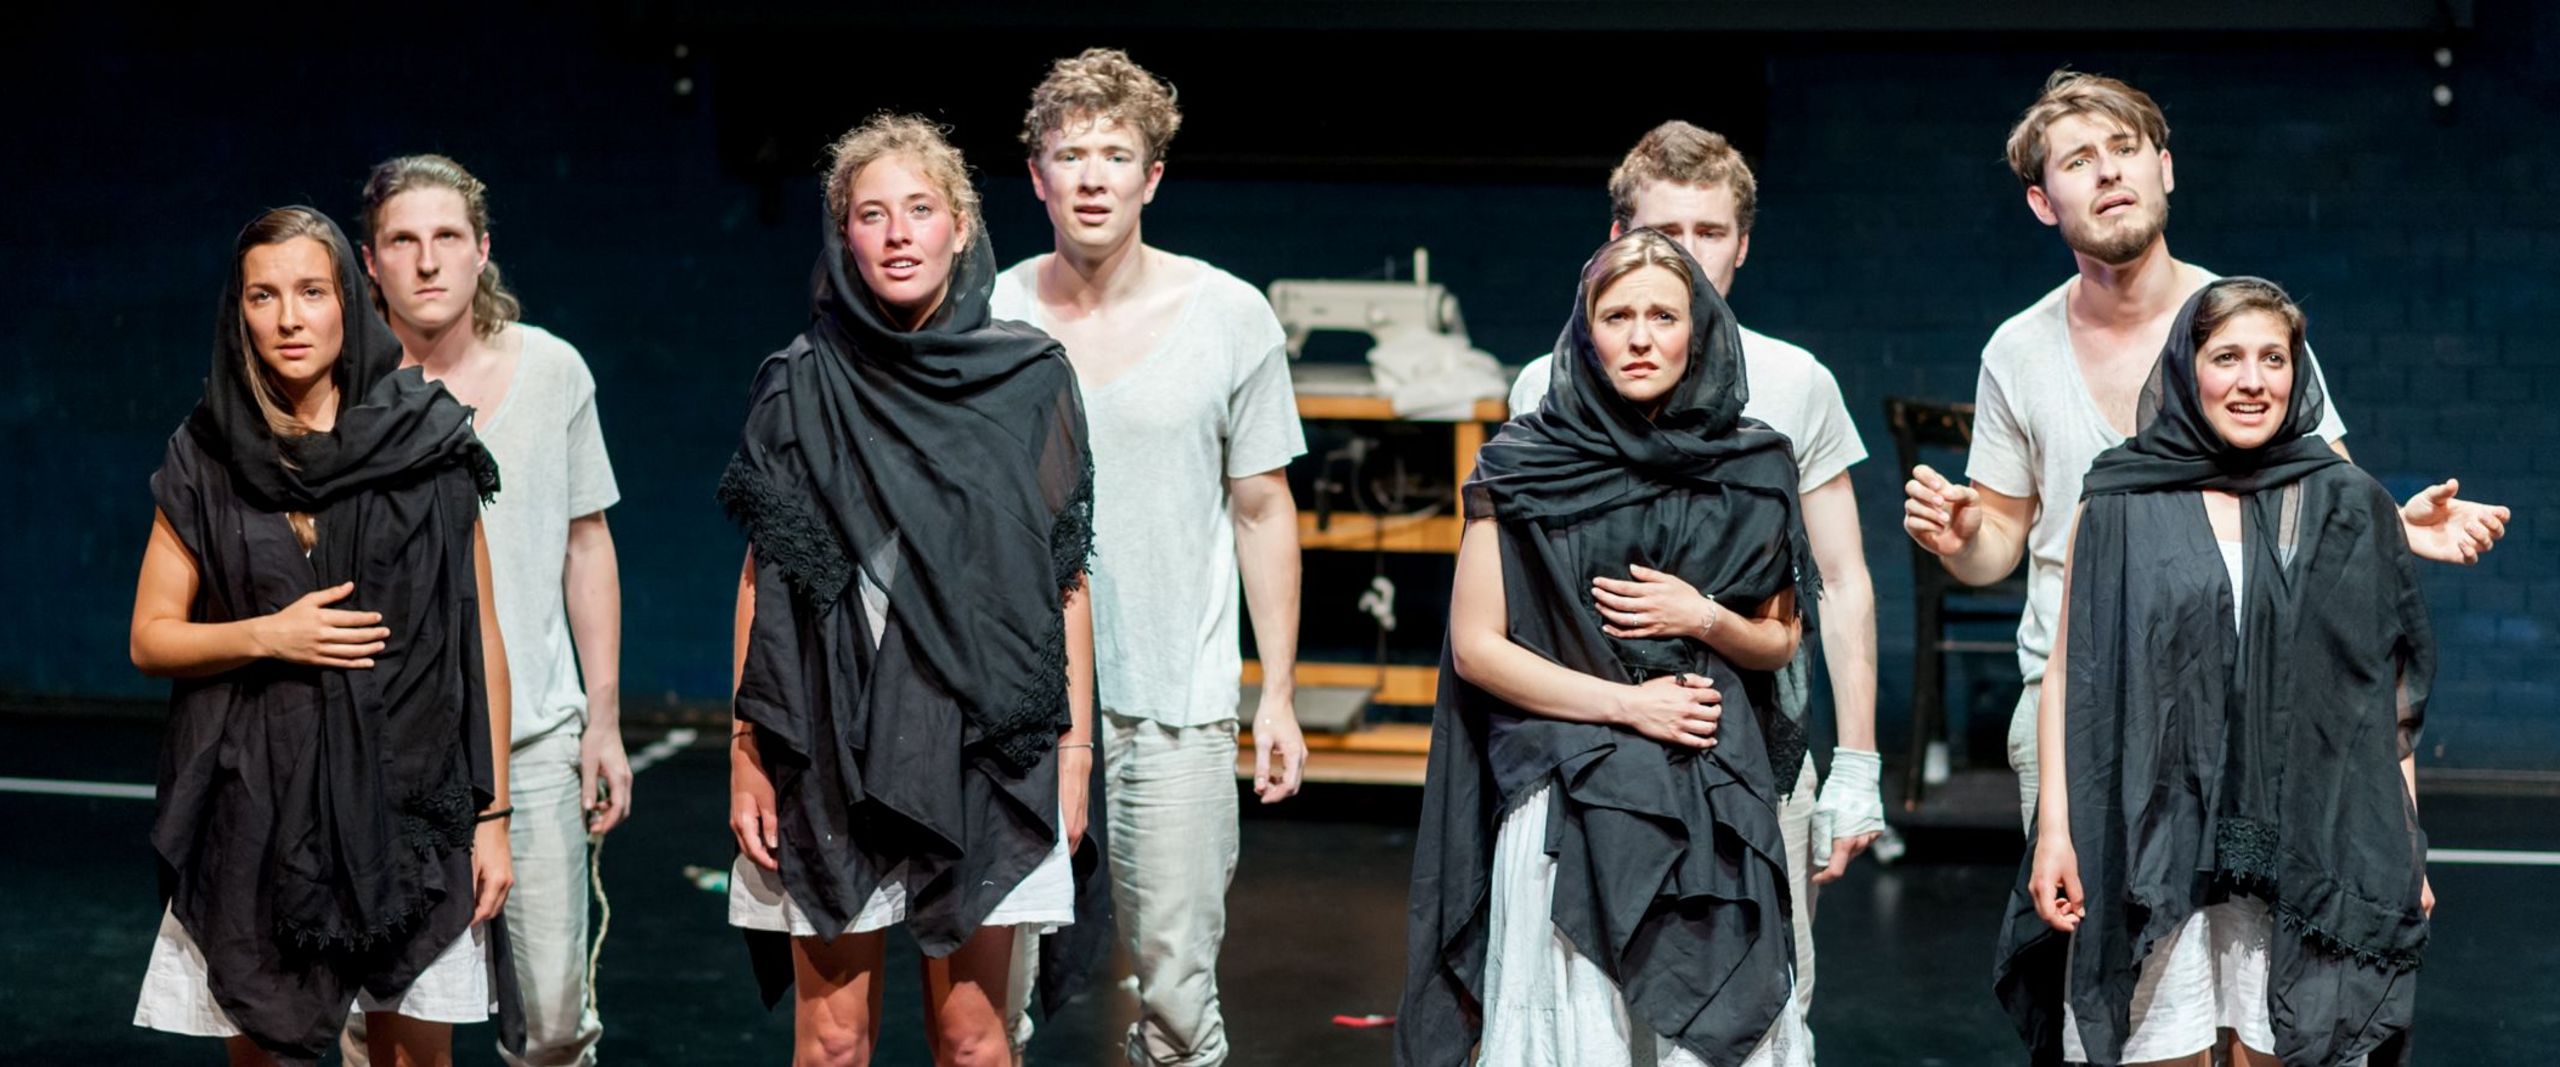 Bühnenszene aus dem Theaterstück "Peer Gynt" mit einer Gruppe Studierender in Pärchen aufgereiht.